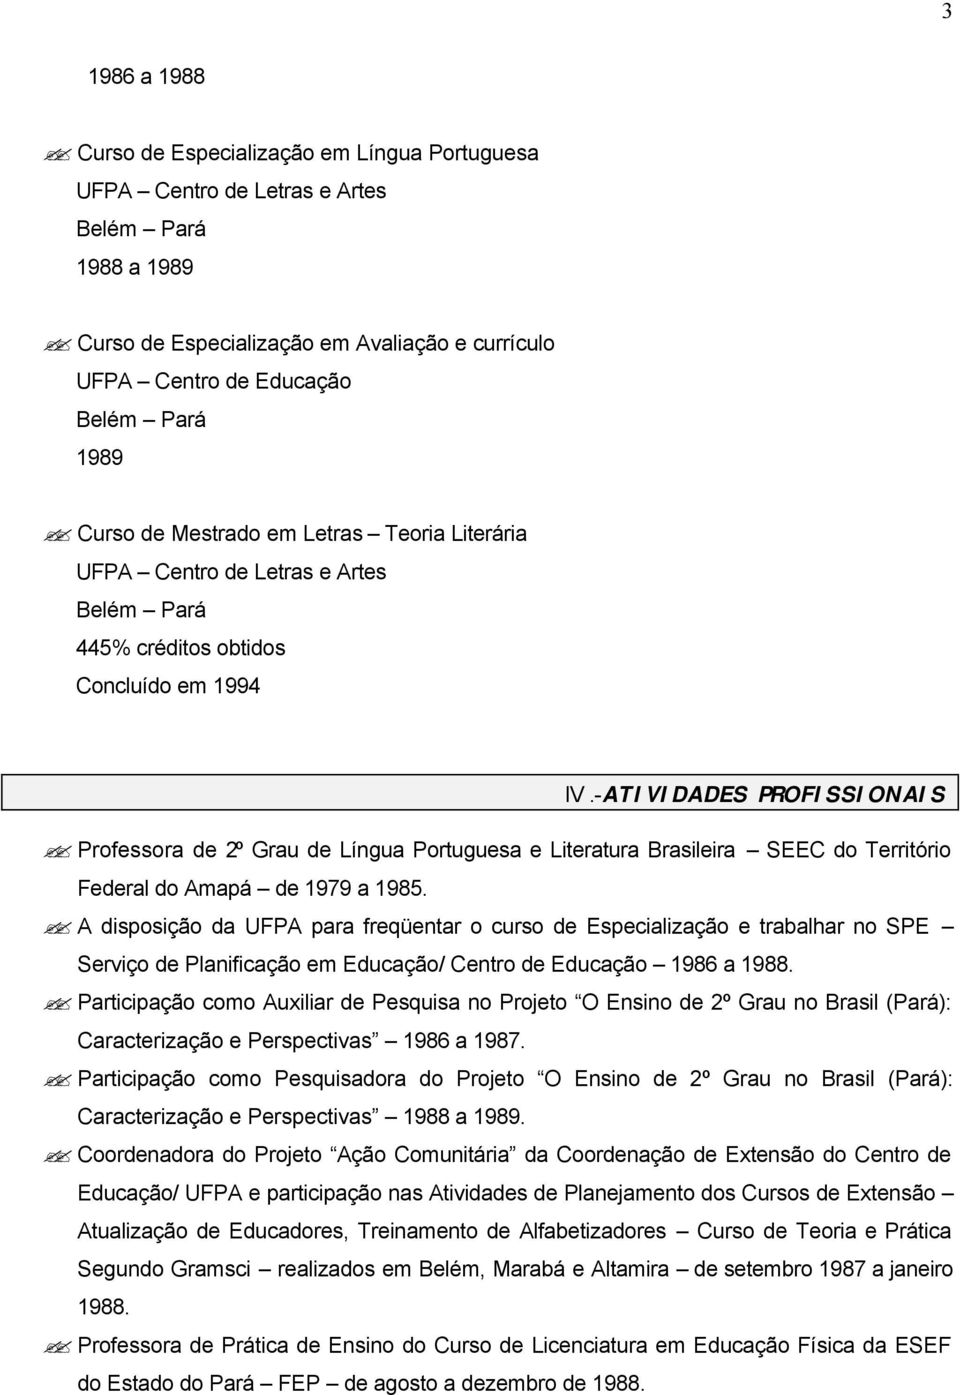 -ATIVIDADES PROFISSIONAIS Professora de 2º Grau de Língua Portuguesa e Literatura Brasileira SEEC do Território Federal do Amapá de 1979 a 1985.